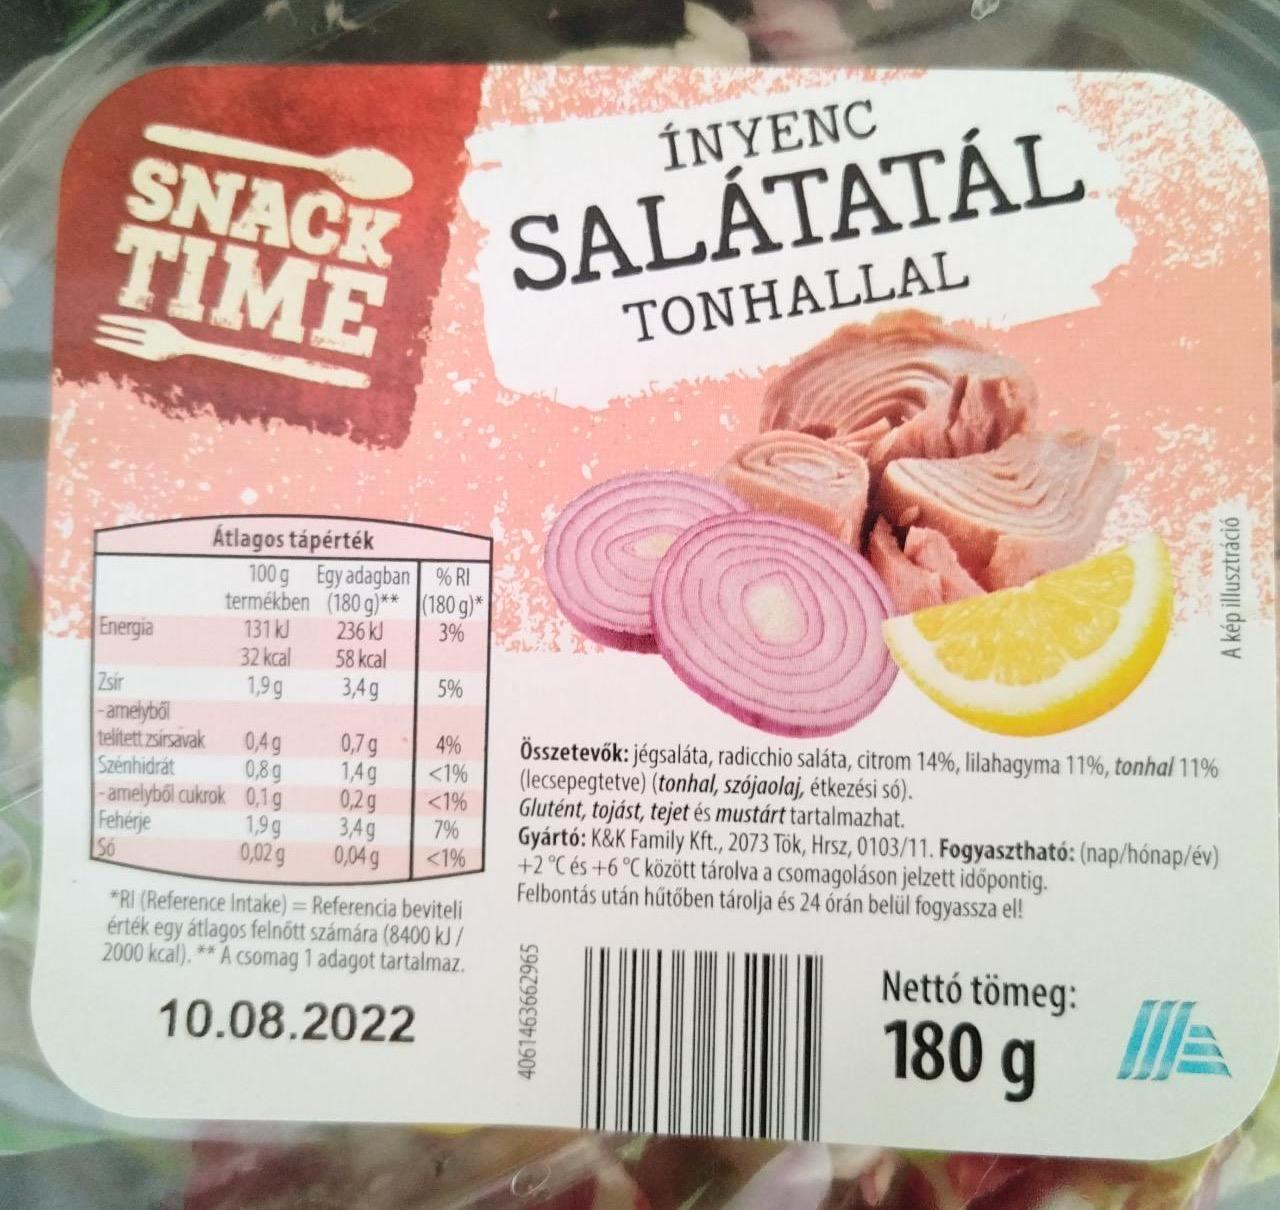 Képek - Ínyenc salátatál tonhallal Snack time